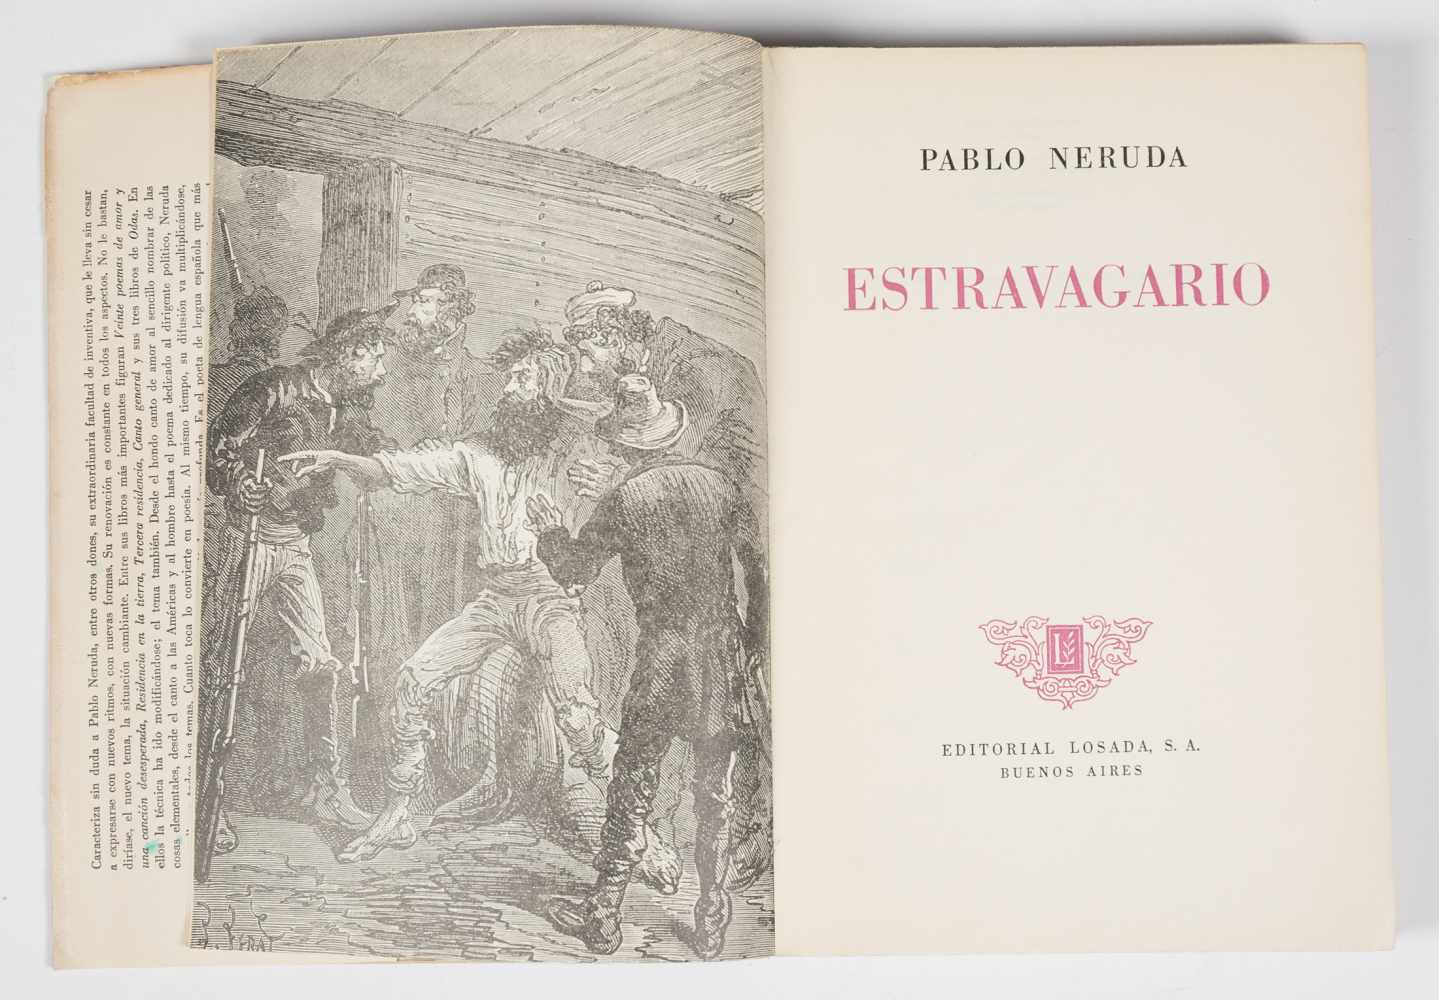 Neruda, Pablo. Estravagario (Extravagaria). 1st edition. Buenos Aires. Published by Losada, 1958. - Image 3 of 6